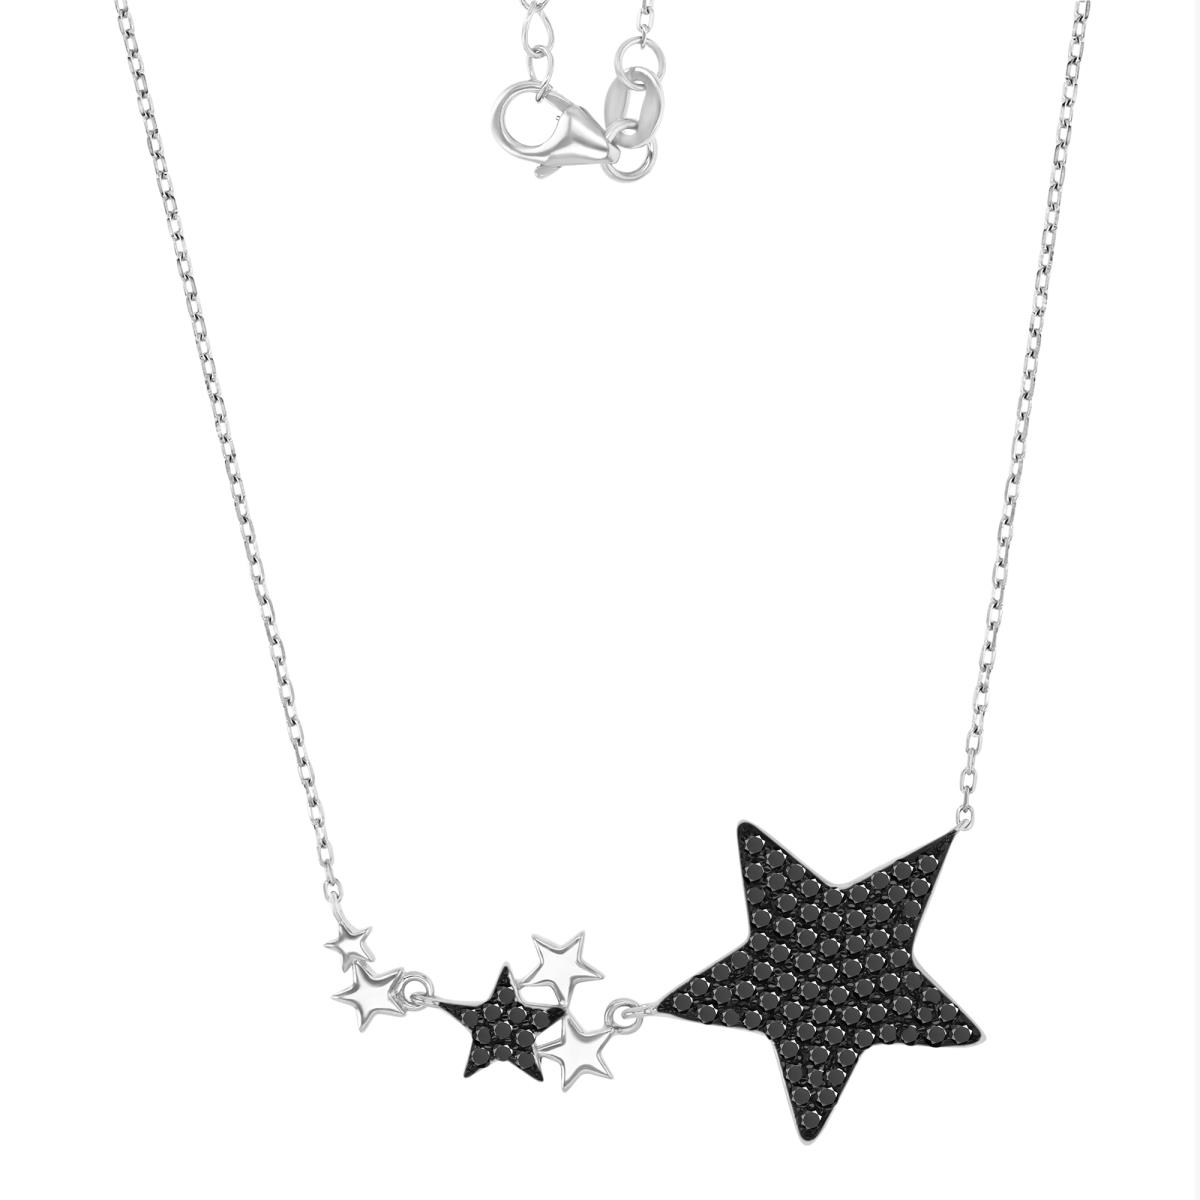 Sterling Silver Black & White 19MM Polished Cr Black Spinel Star Link 16+2" Necklace